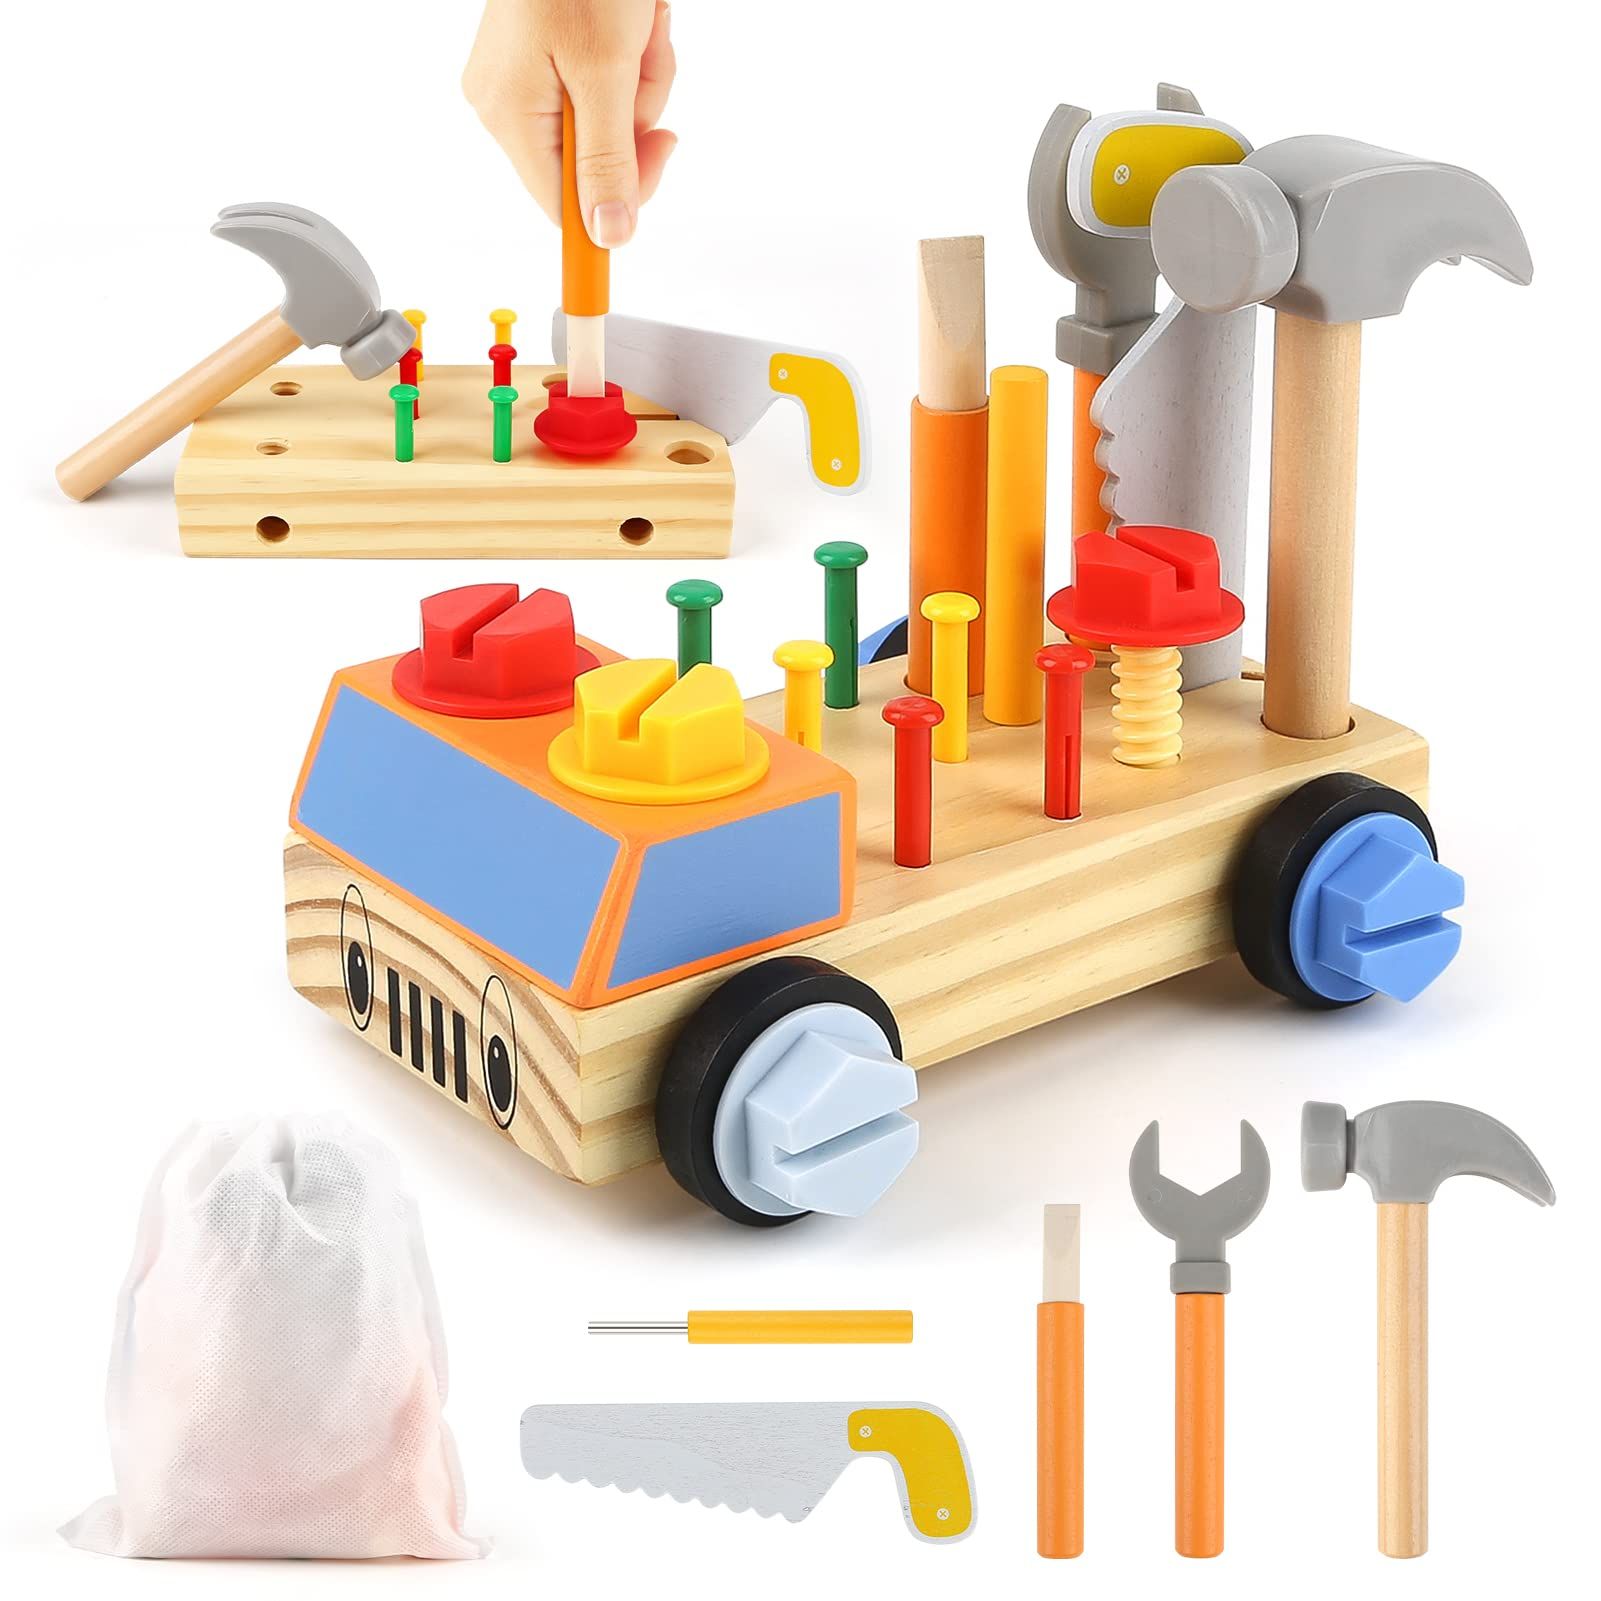 モンテッソーリ おもちゃ 大工 おもちゃさんセット 組み立て おもちゃ 男の子 女の子おもちゃ 木のおもちゃ 知育玩具 子供人気 男の子 女の子 2 3 4 5 6歳誕生日 プレゼント